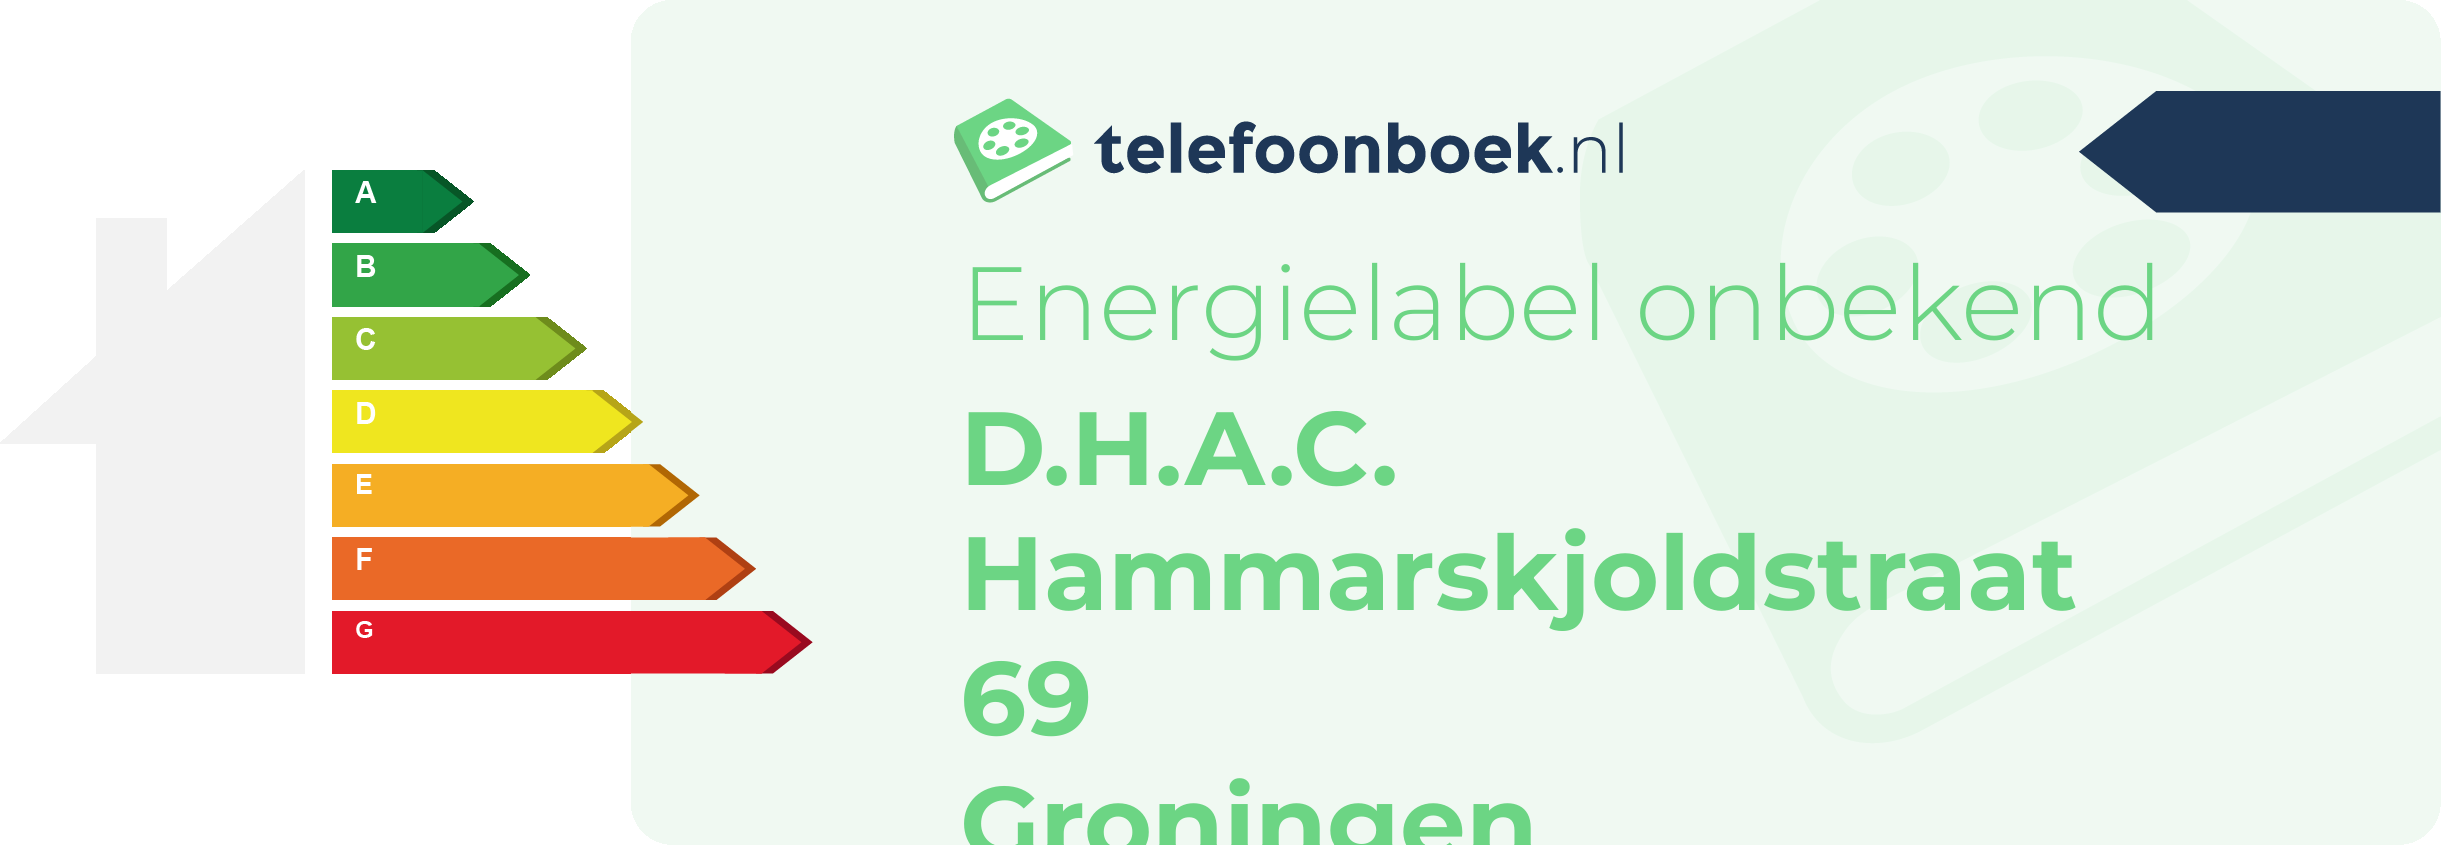 Energielabel D.H.A.C. Hammarskjoldstraat 69 Groningen